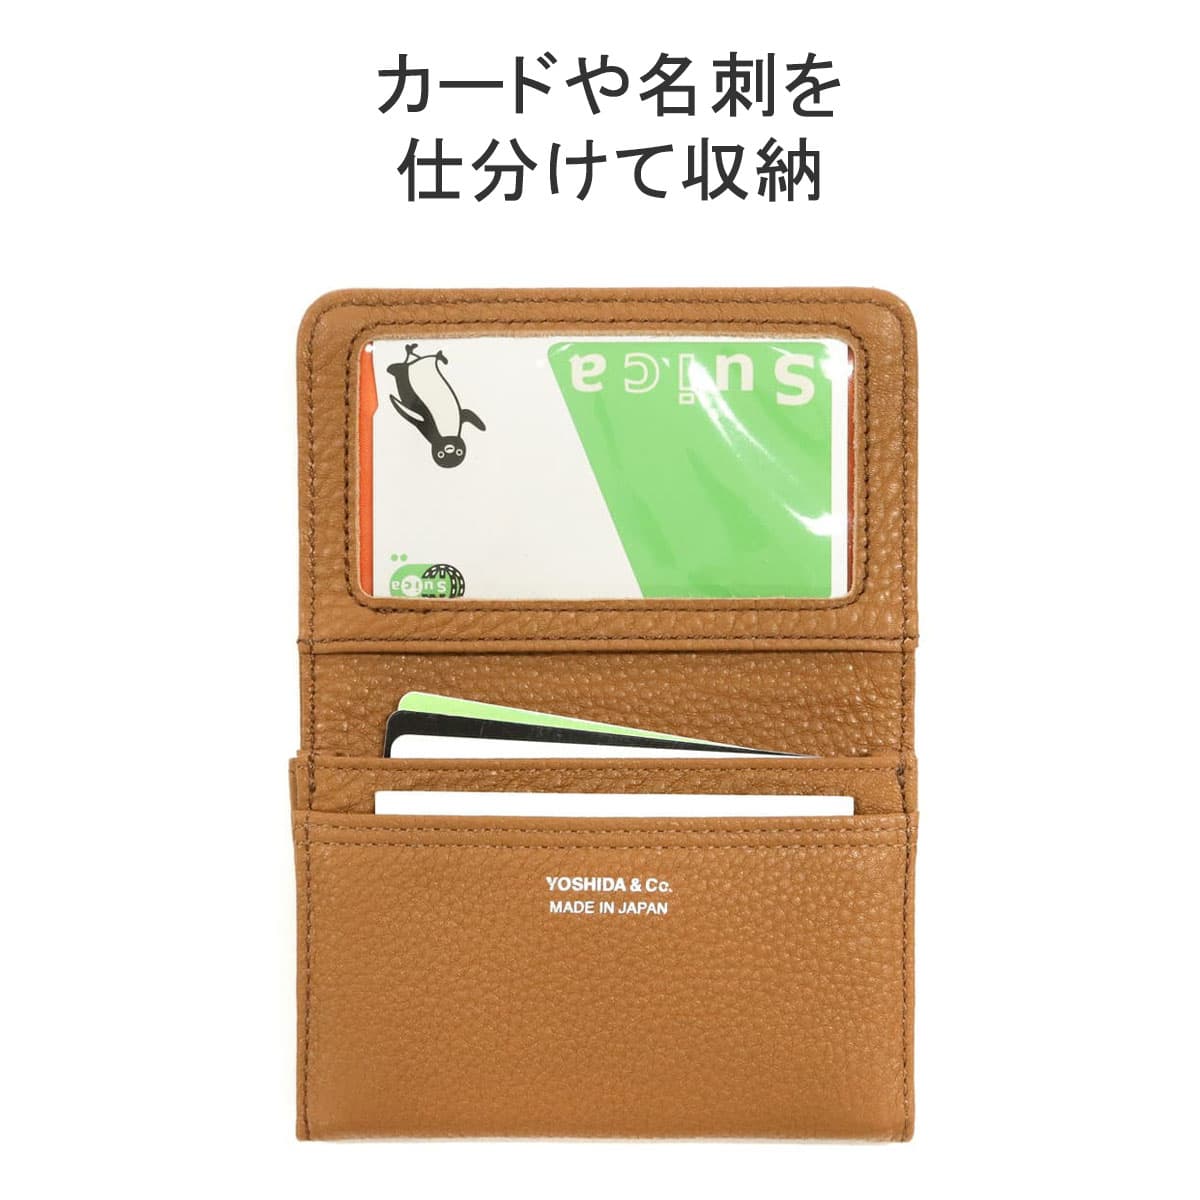 ポーター カーム カードケース 041-03127 キーパック 吉田カバン PORTER CALM CARD CASE